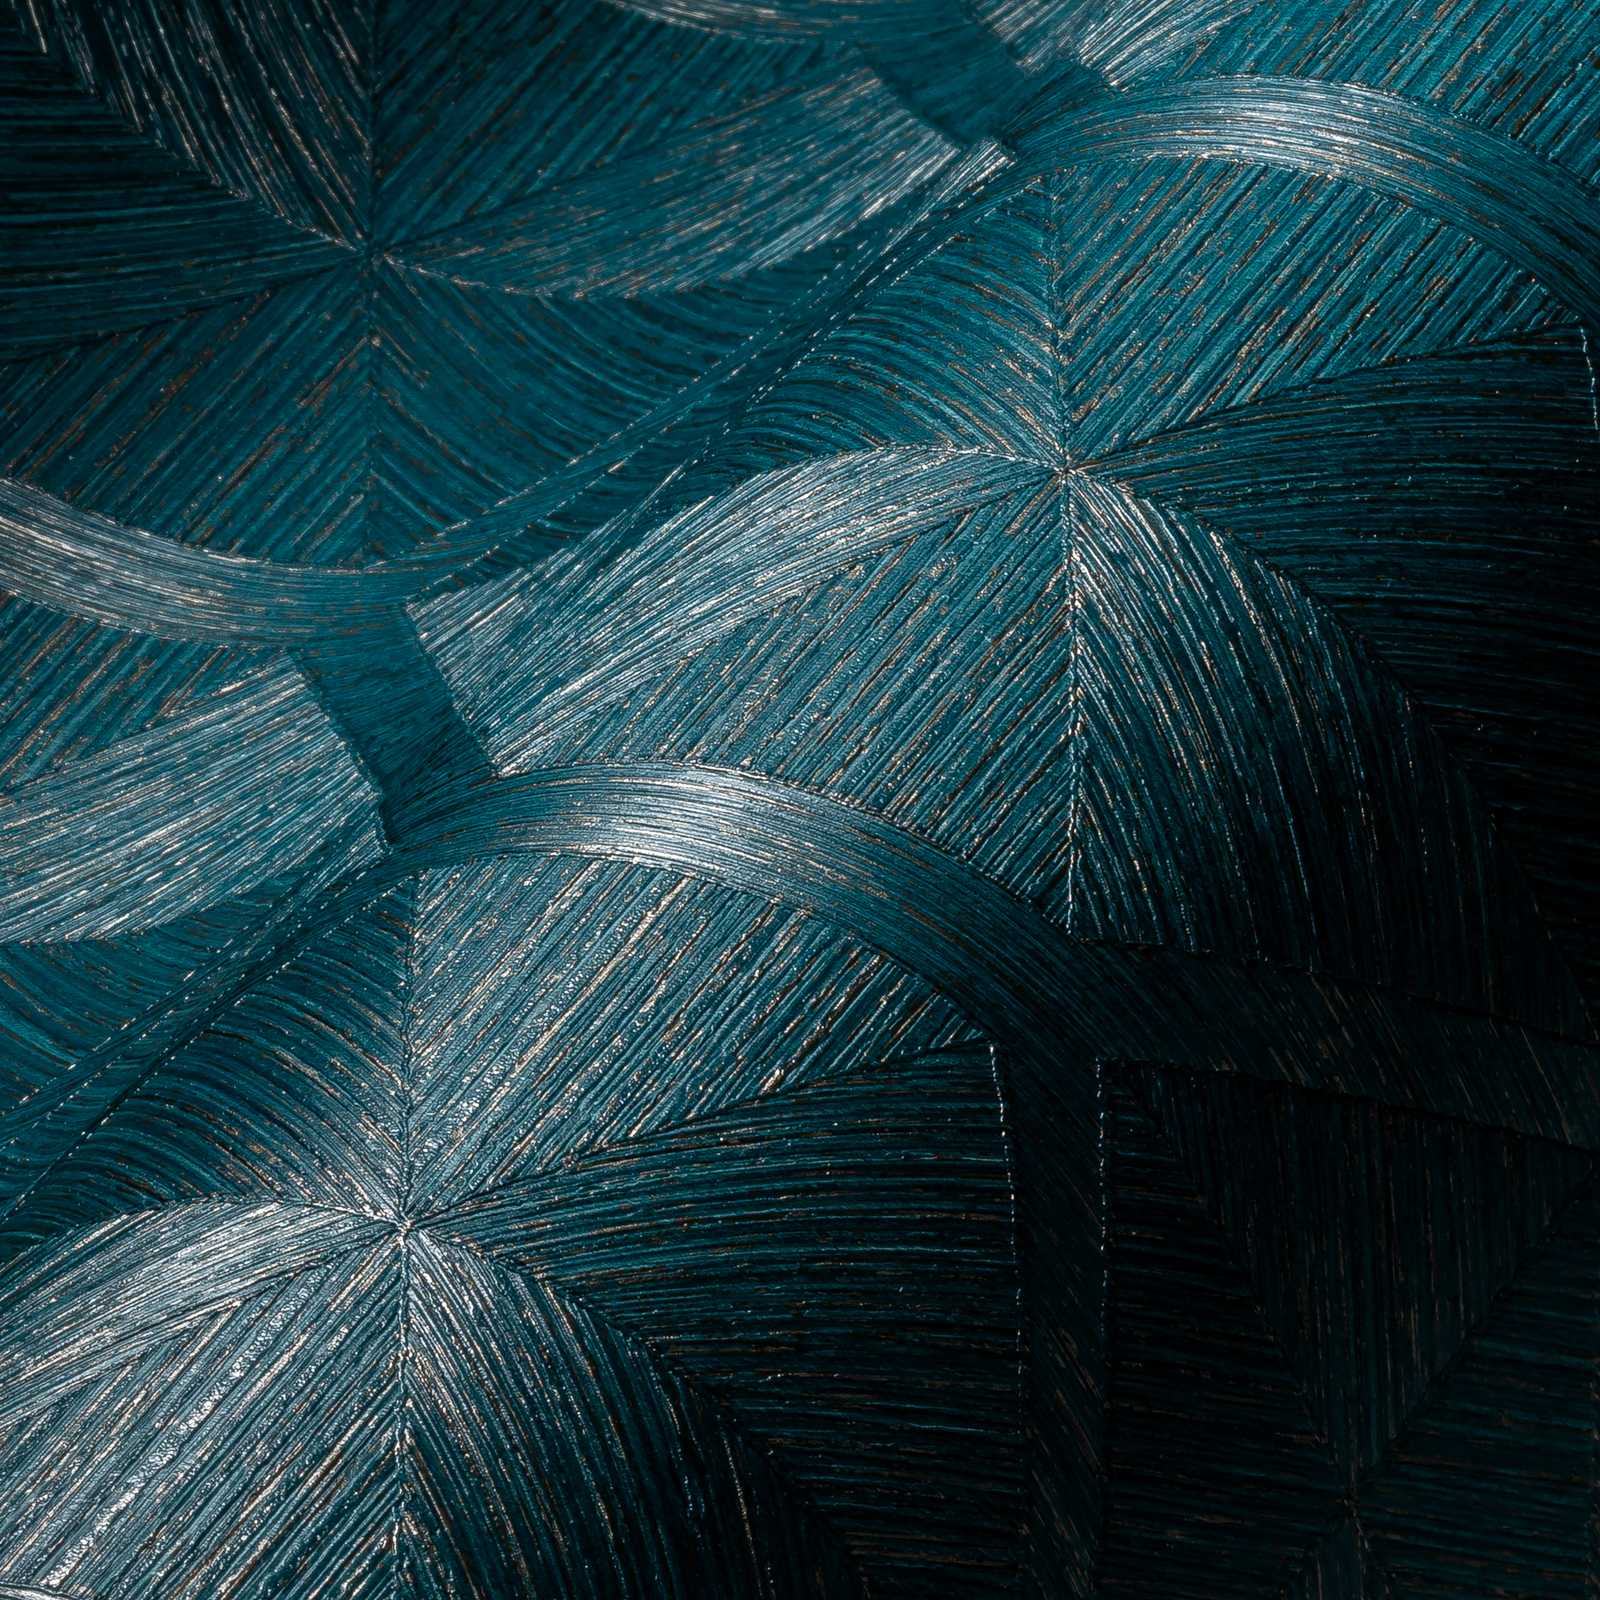             Vliesbehang petrolblauw met goudaccent en grafisch patroon - blauw, metallic
        